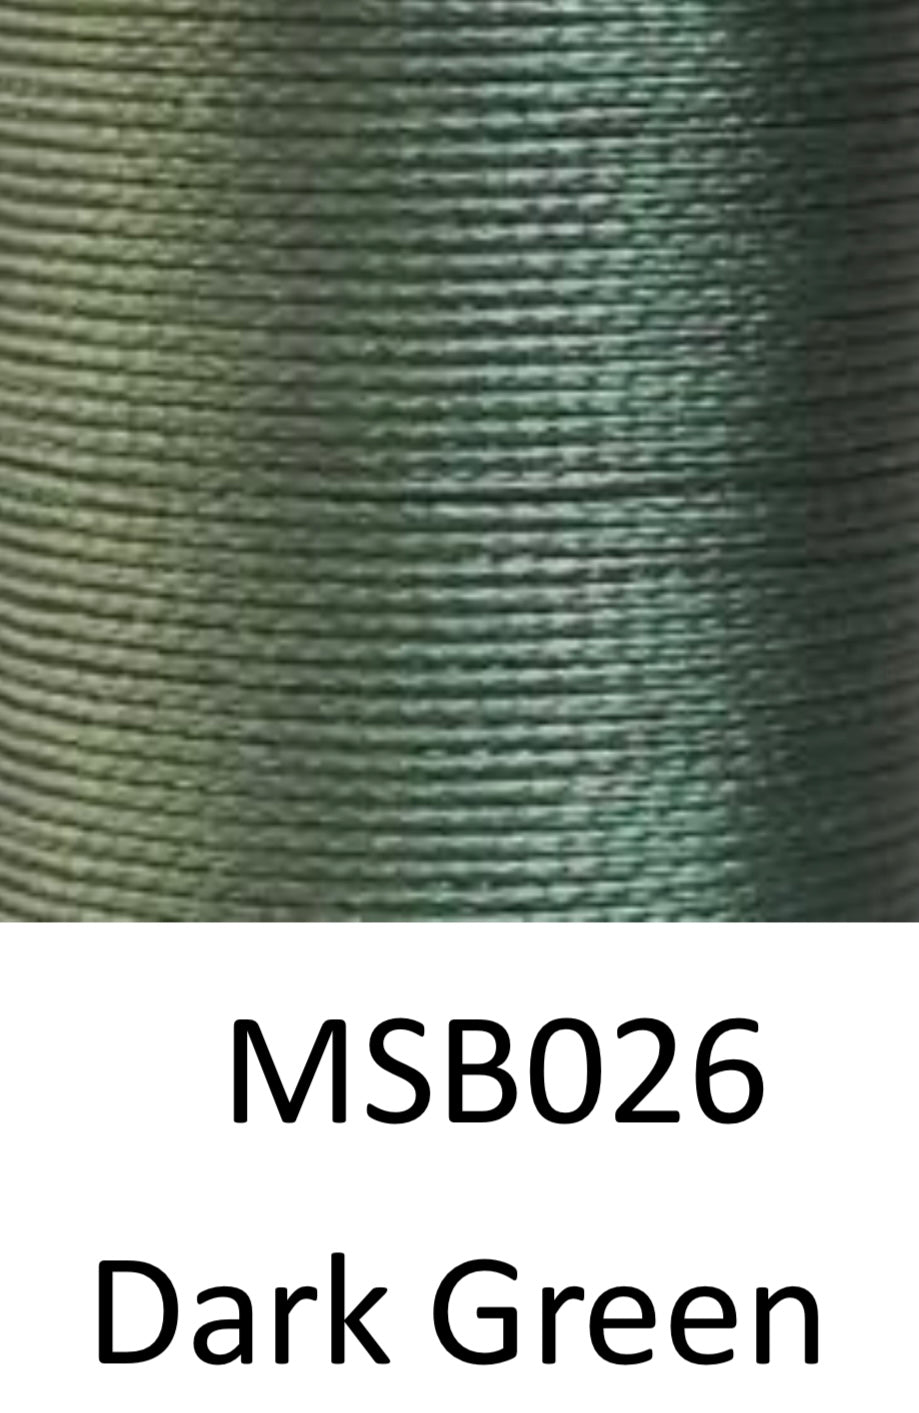 Garn de poliéster trenzado Xiange | M50 0,55mm | Bobinas de 50m